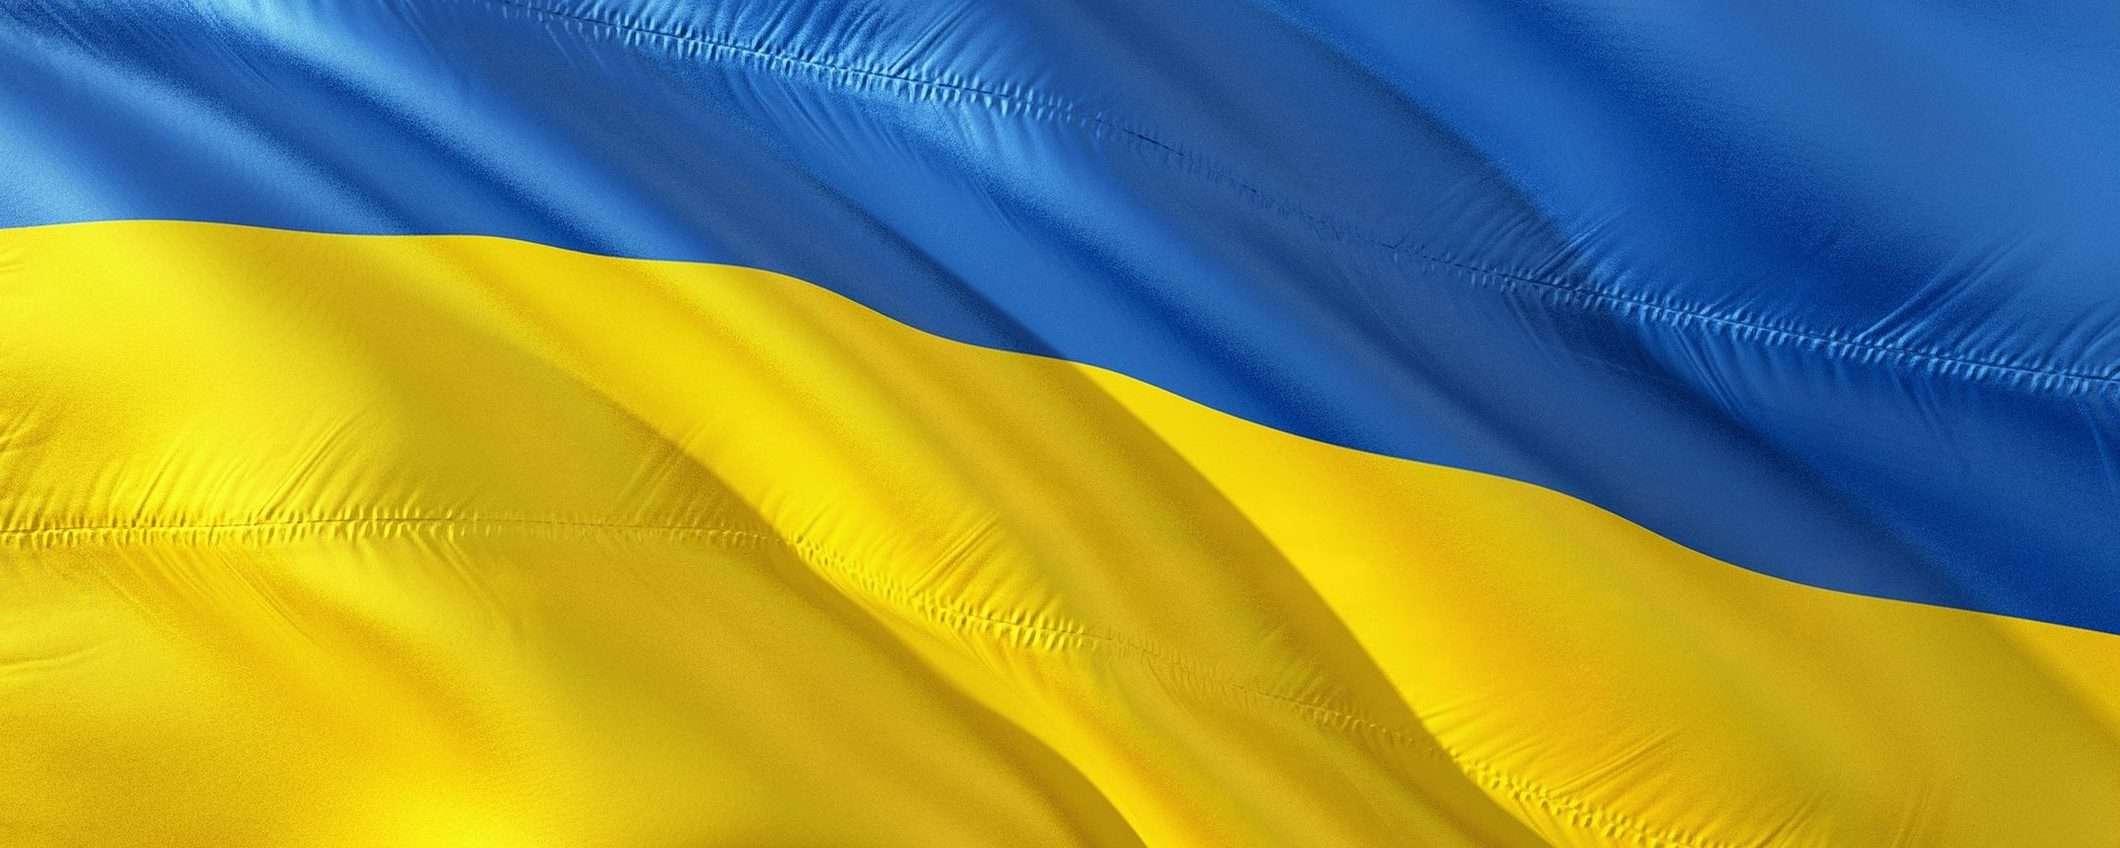 Guerra in Ucraina: è boom di abbonamenti VPN in Russia